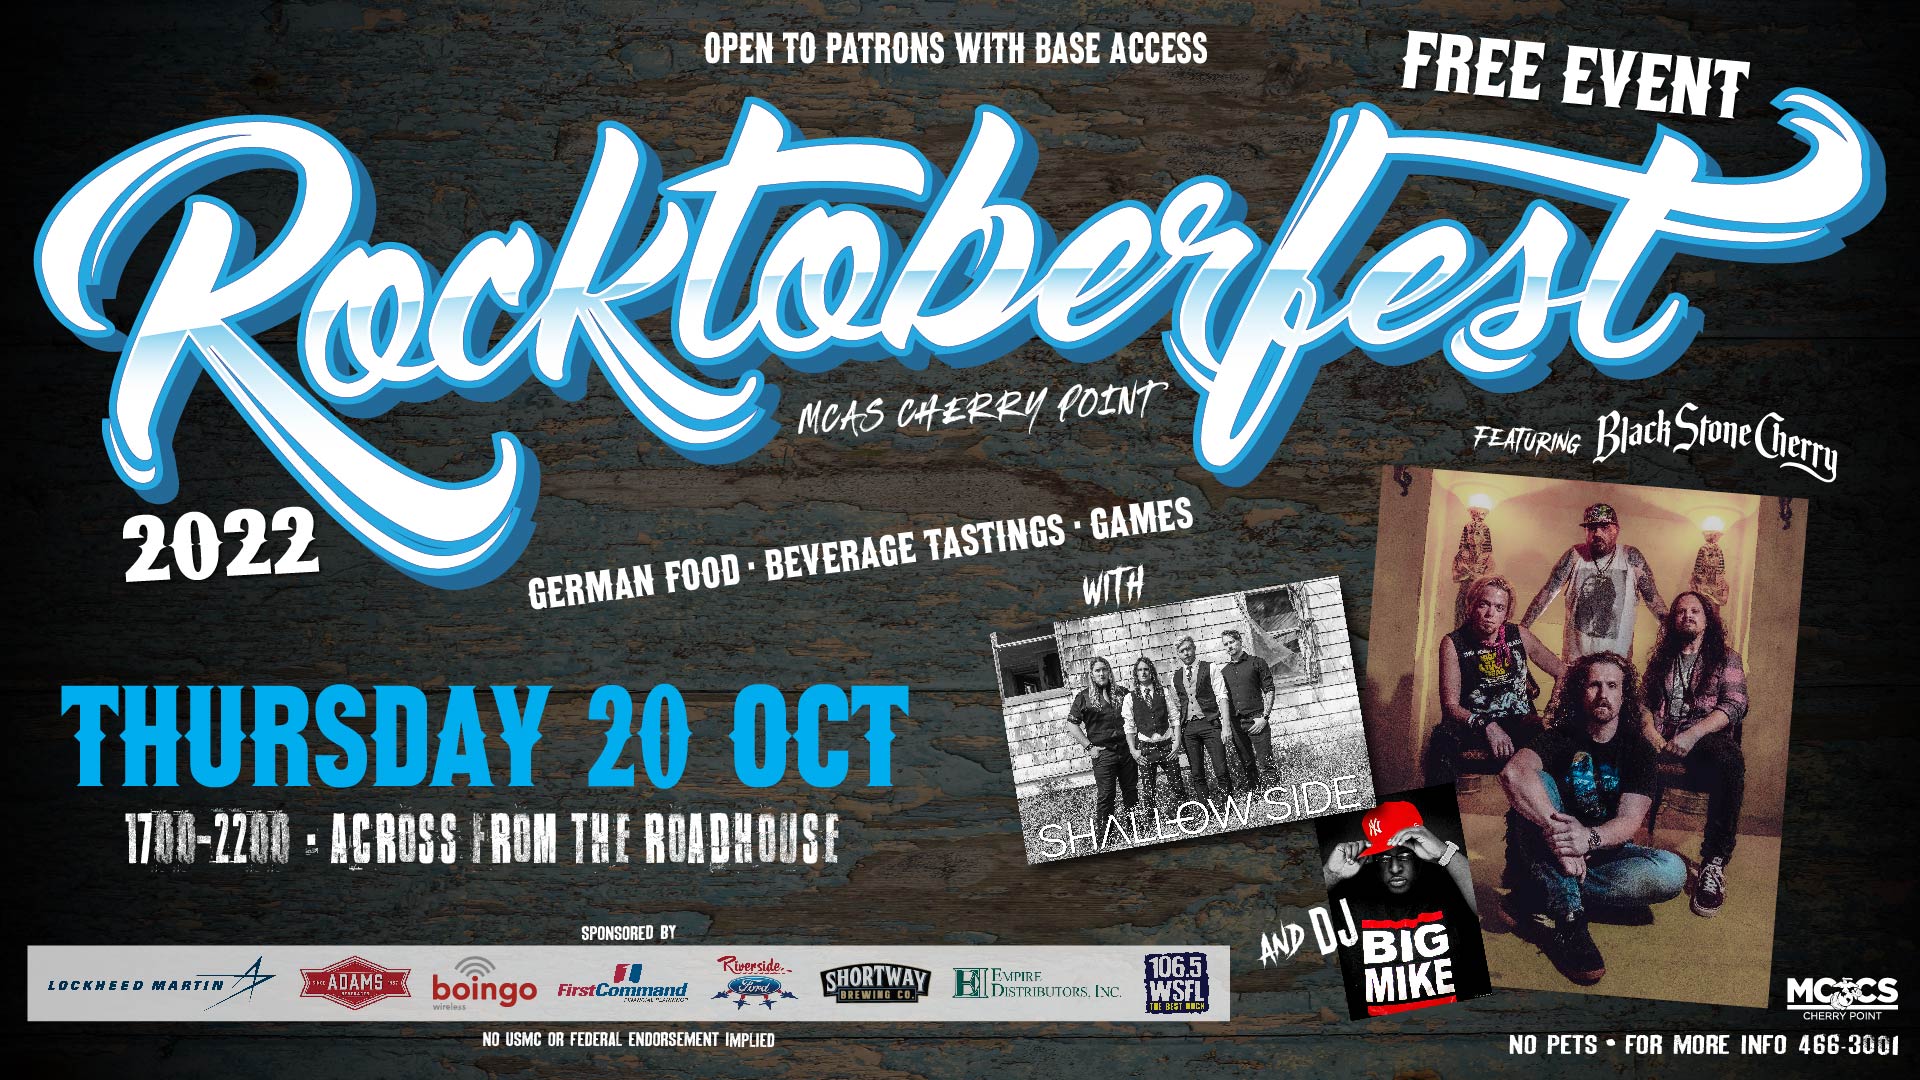 Rocktoberfest 2022 Ad